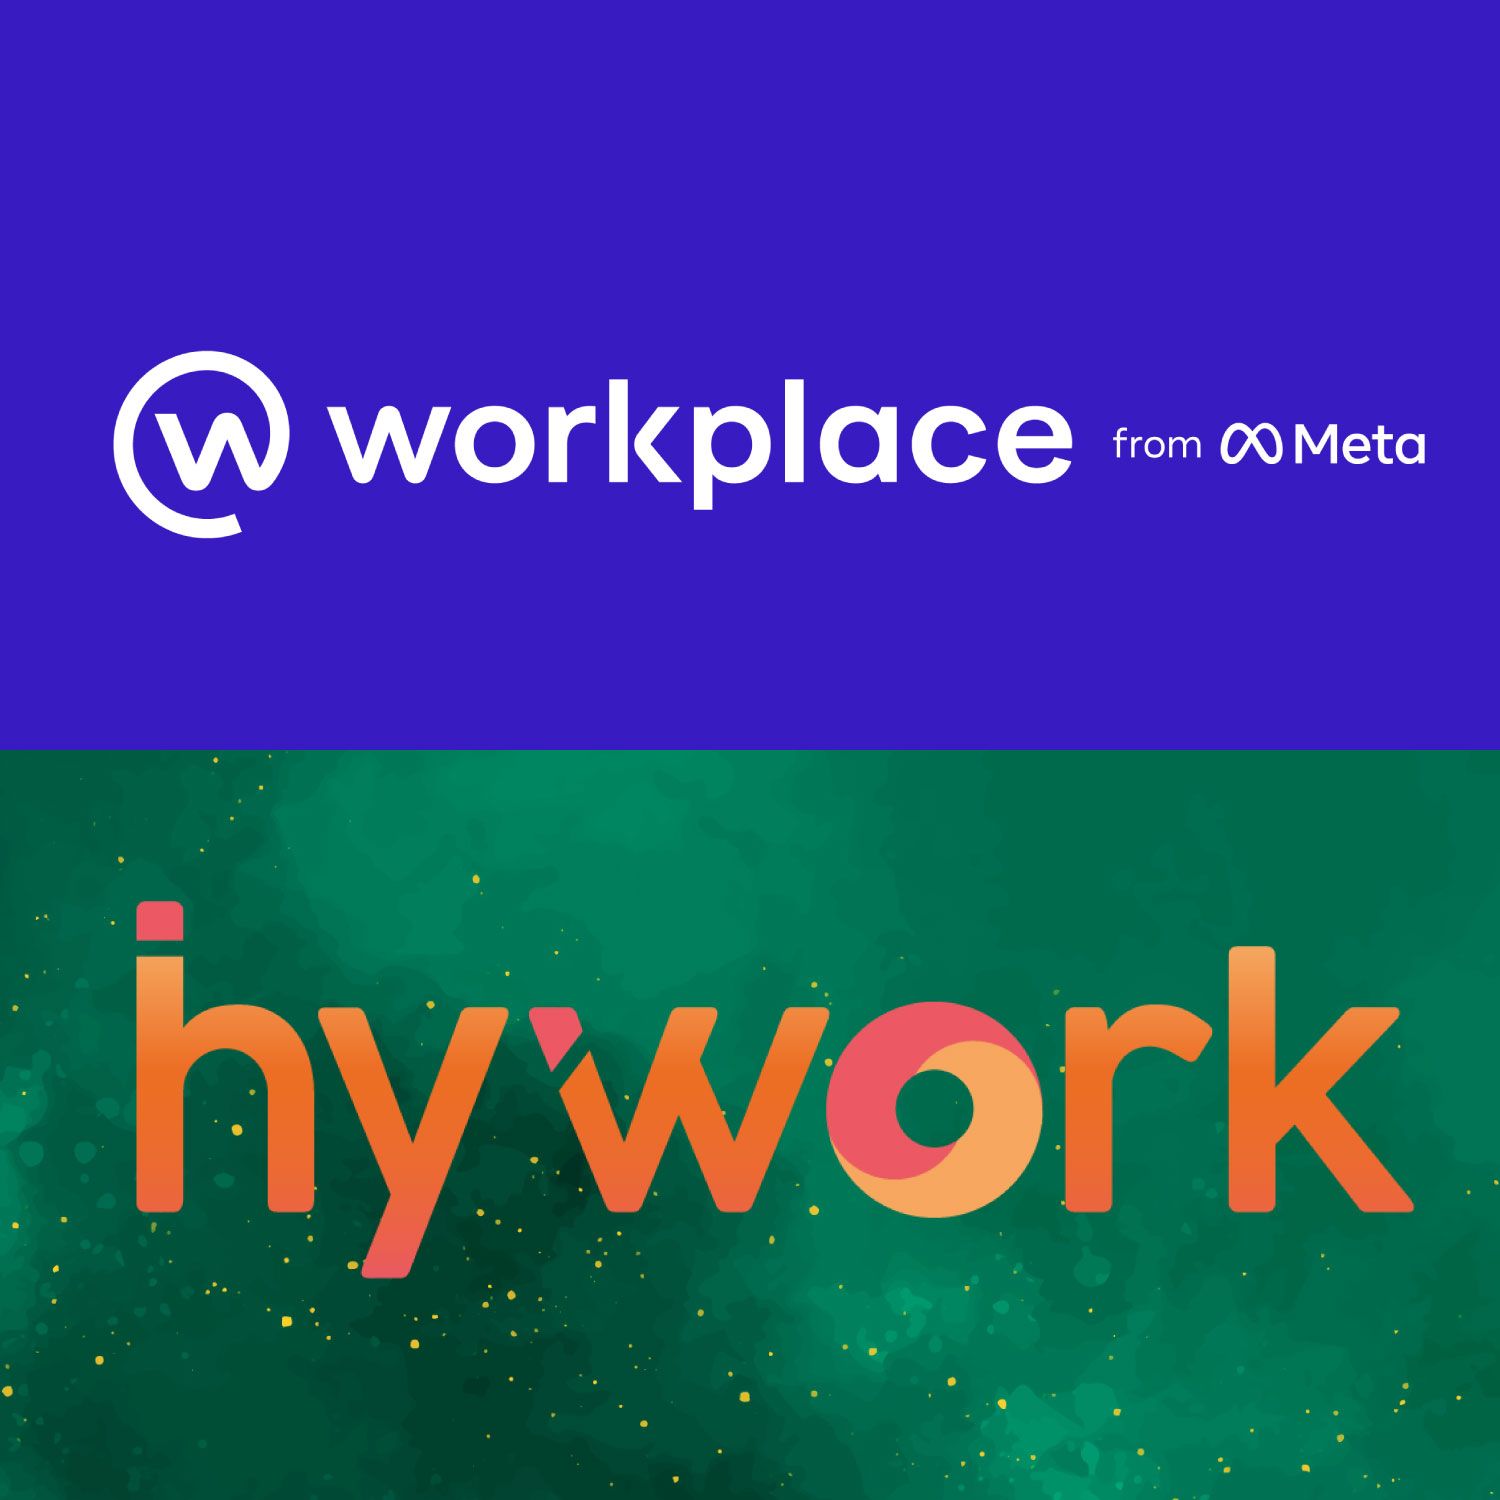 Workplace by Meta encerra atividade e HyWork é opção para empresas brasileiras